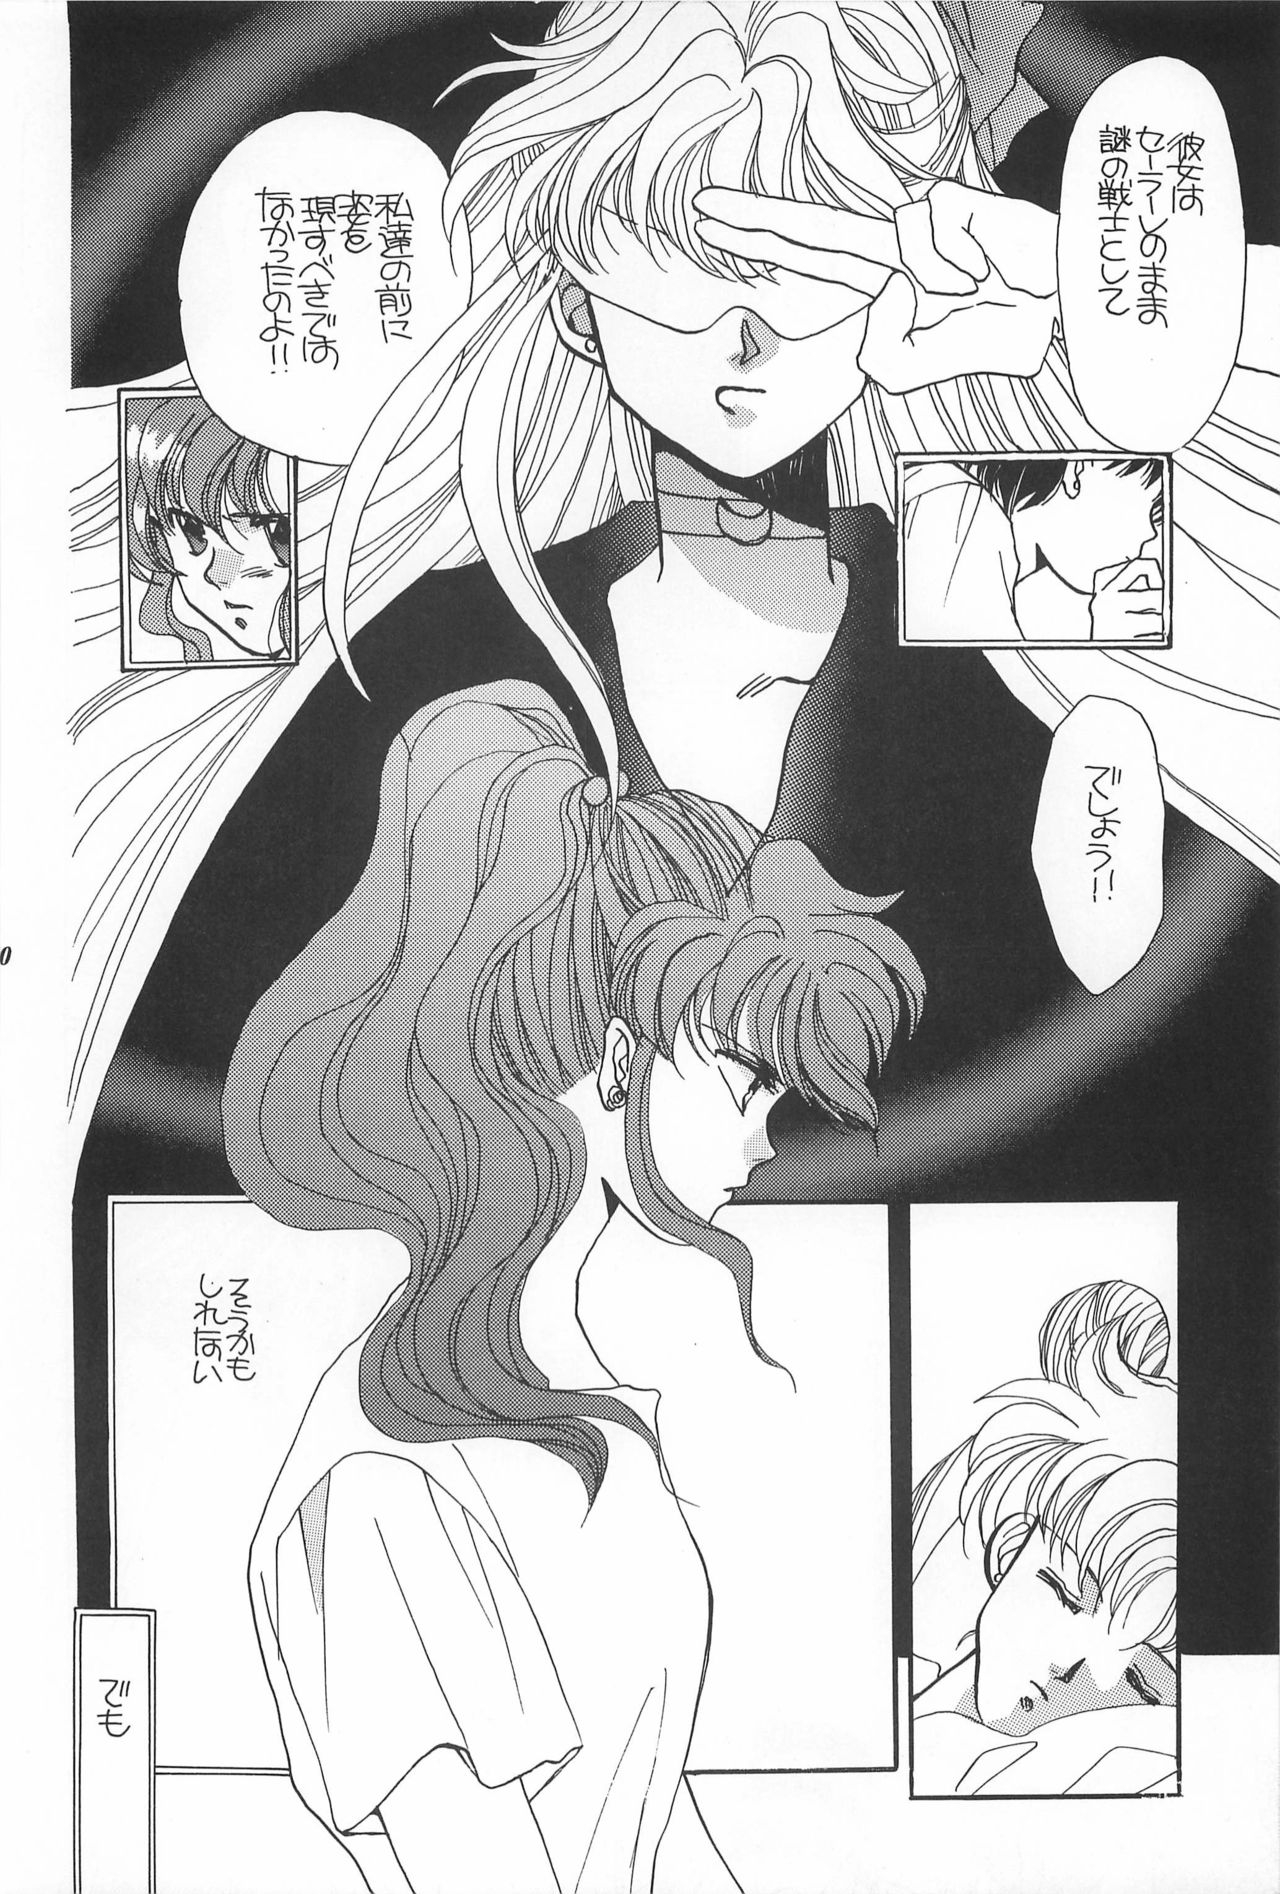 [Hello World (Muttri Moony)] Kaze no You ni Yume no You ni - Sailor Moon Collection (Sailor Moon) 169